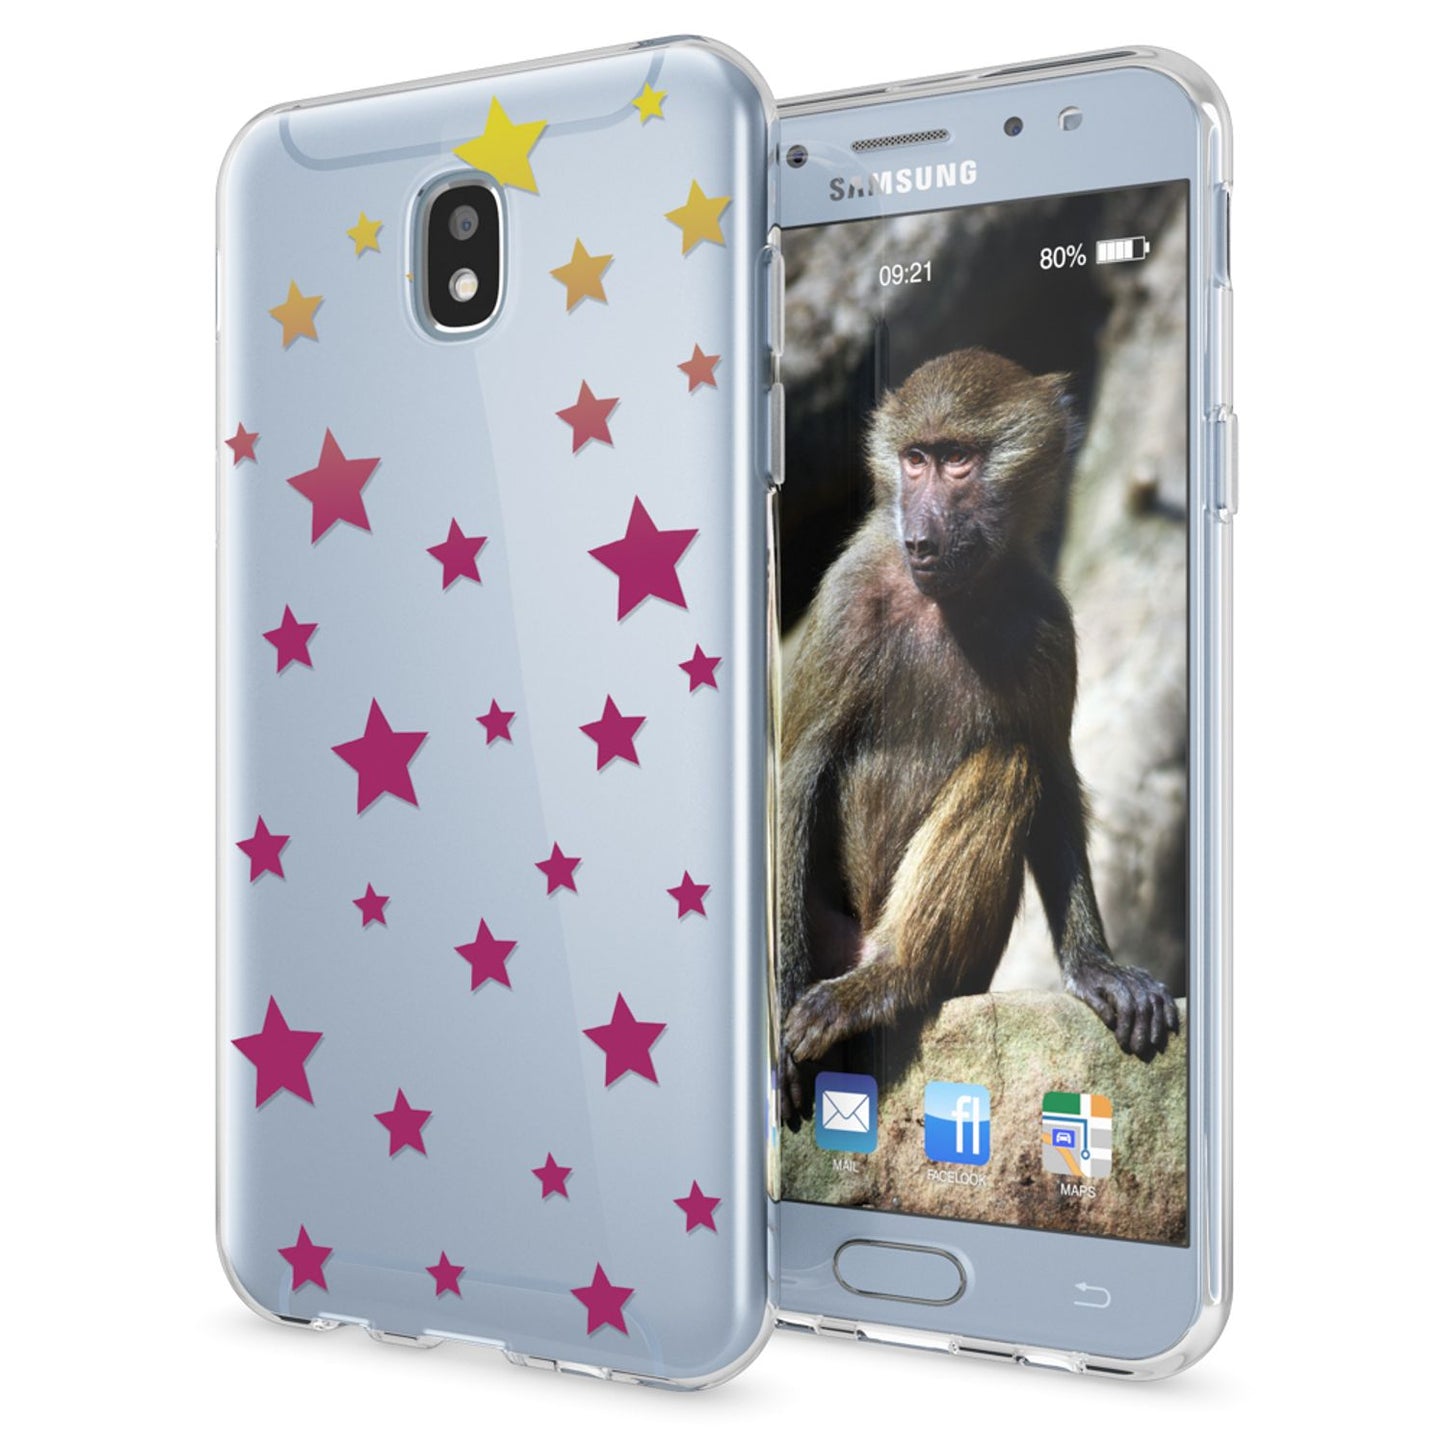 Samsung Galaxy J5 2017 (EU-Model) Hülle Handyhülle von NALIA, Case Cover Tasche